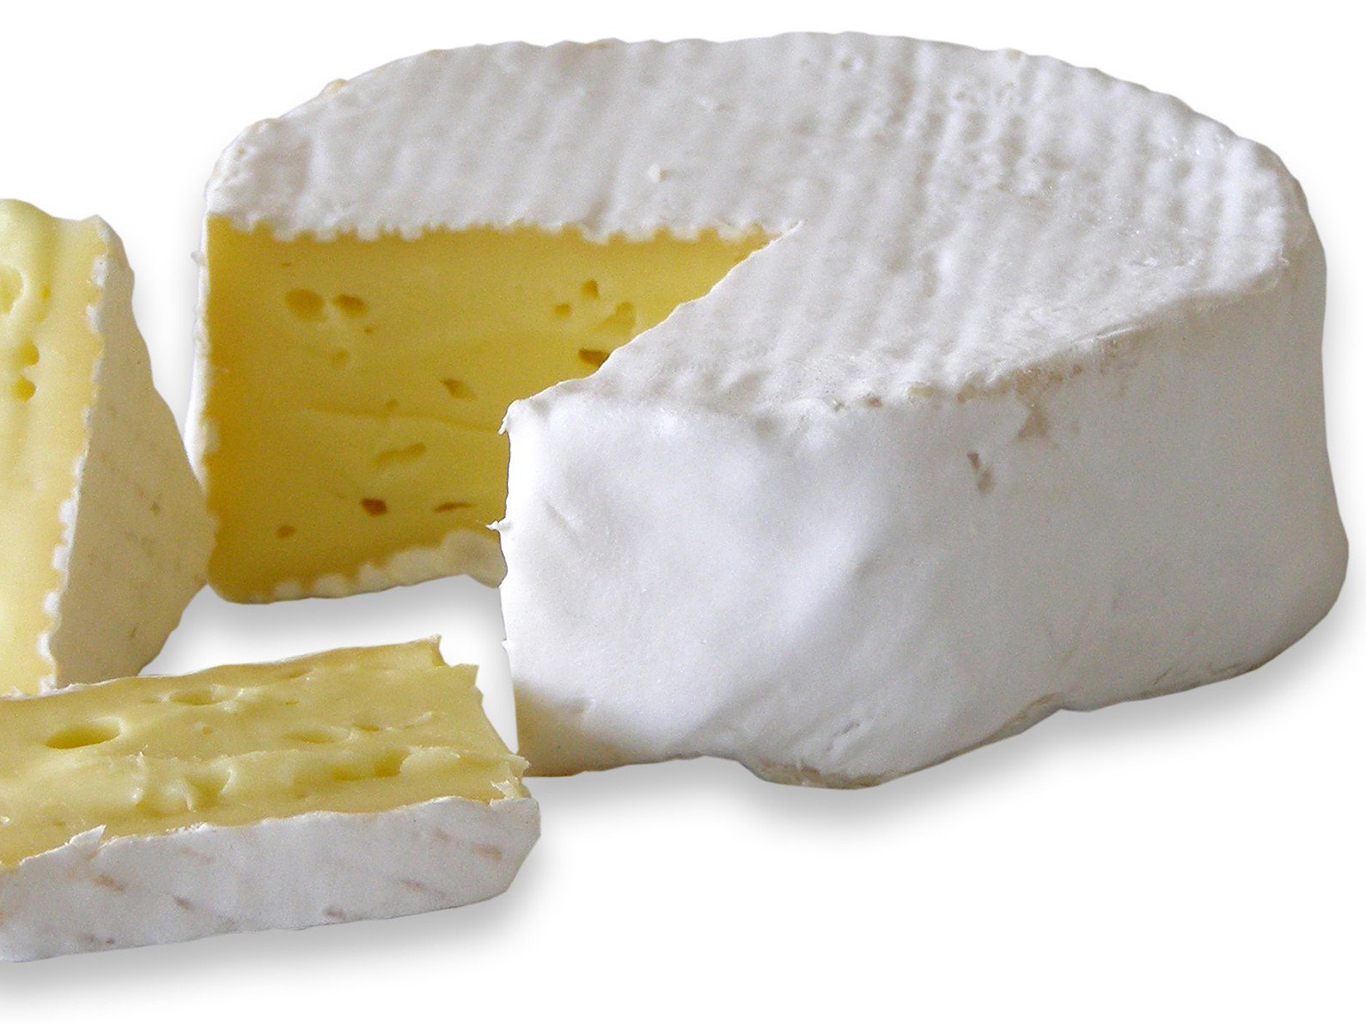 Normandský měkký krémový sýr Camembert se vyrábí od konce 18. století